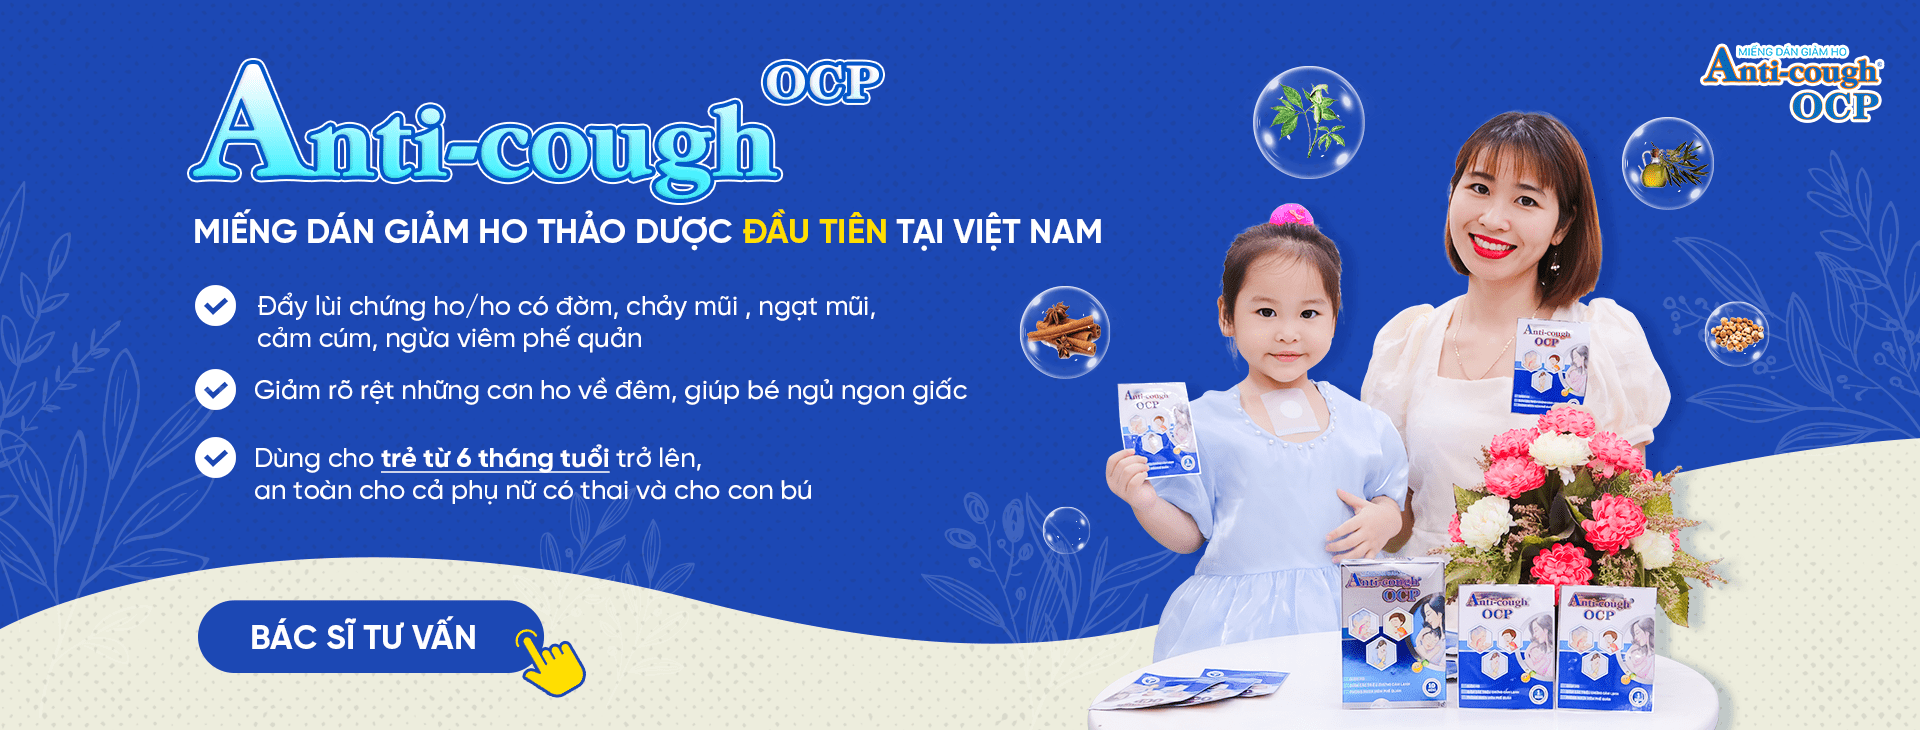 Bác sĩ Nguyễn Thị Nhung